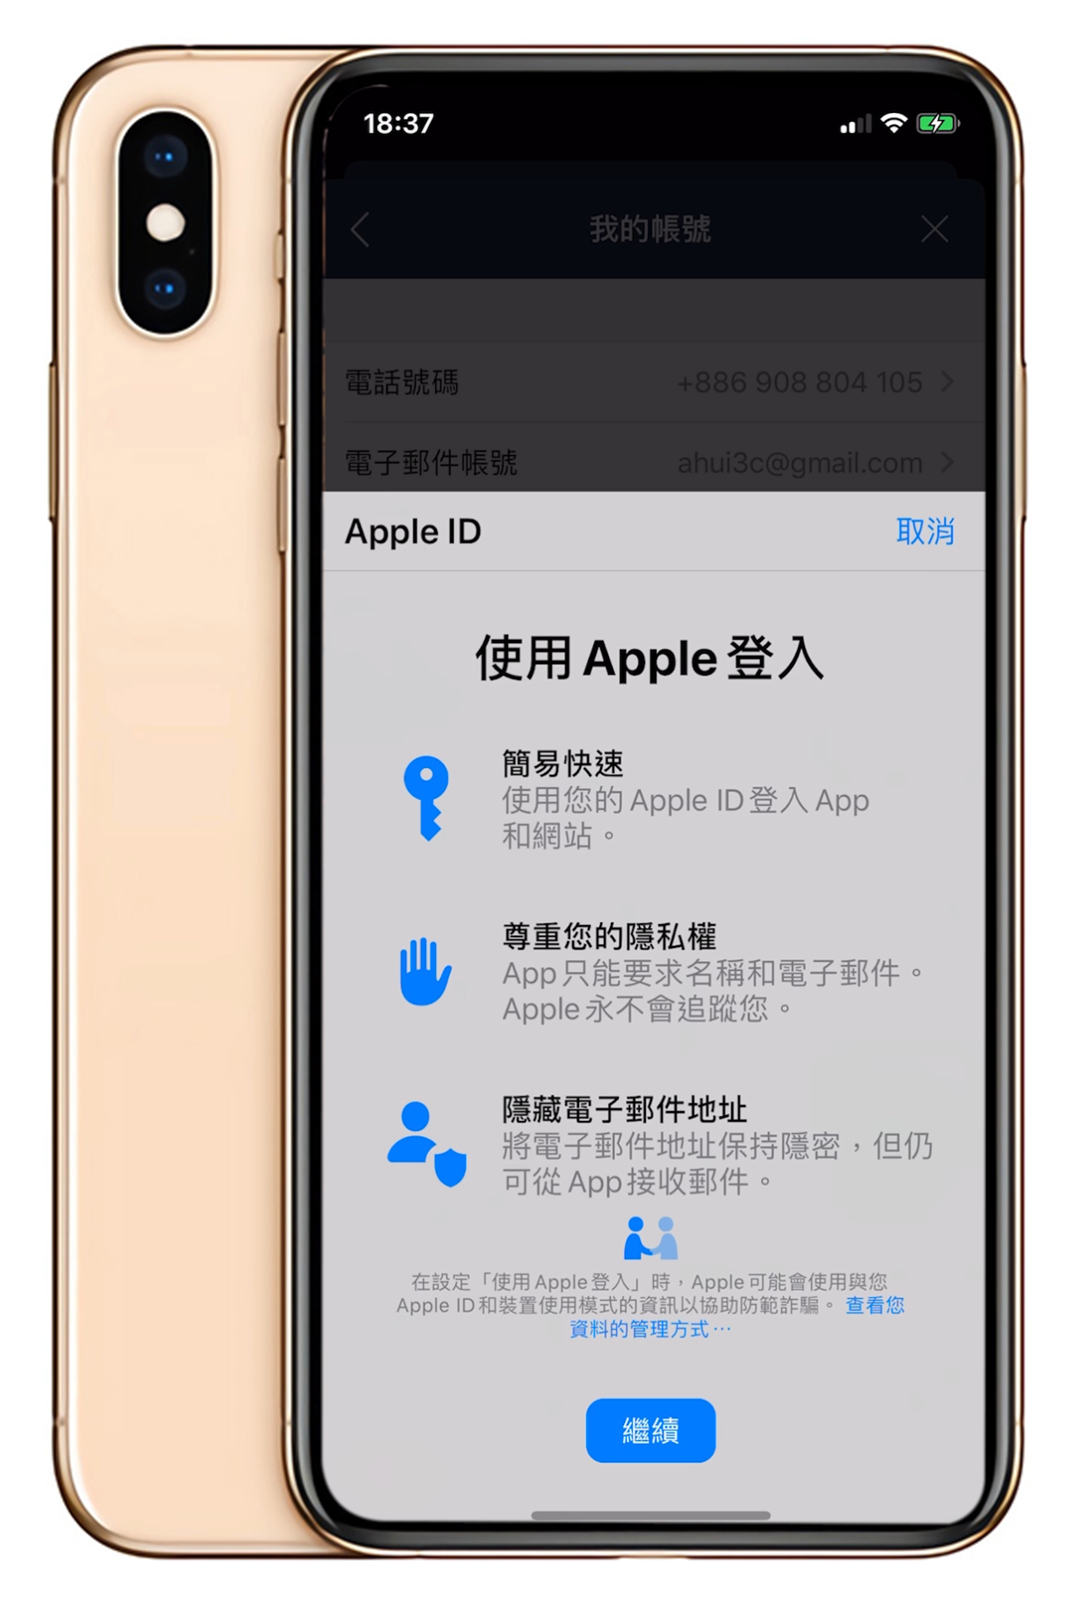 [教學] LINE 整合 Apple ID 登入功能上線！登入安全更簡單 @3C 達人廖阿輝